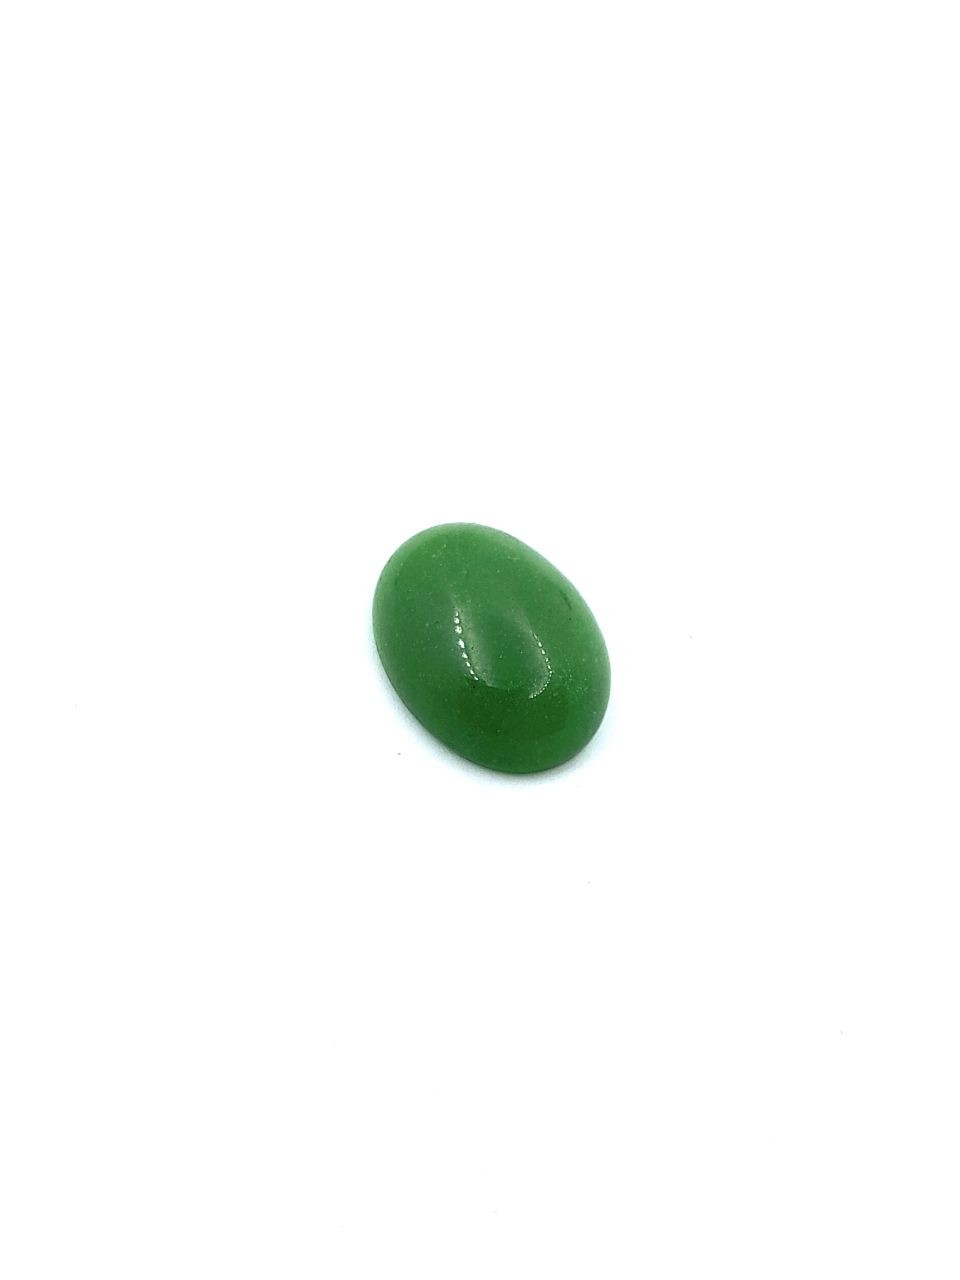 Green agate stone